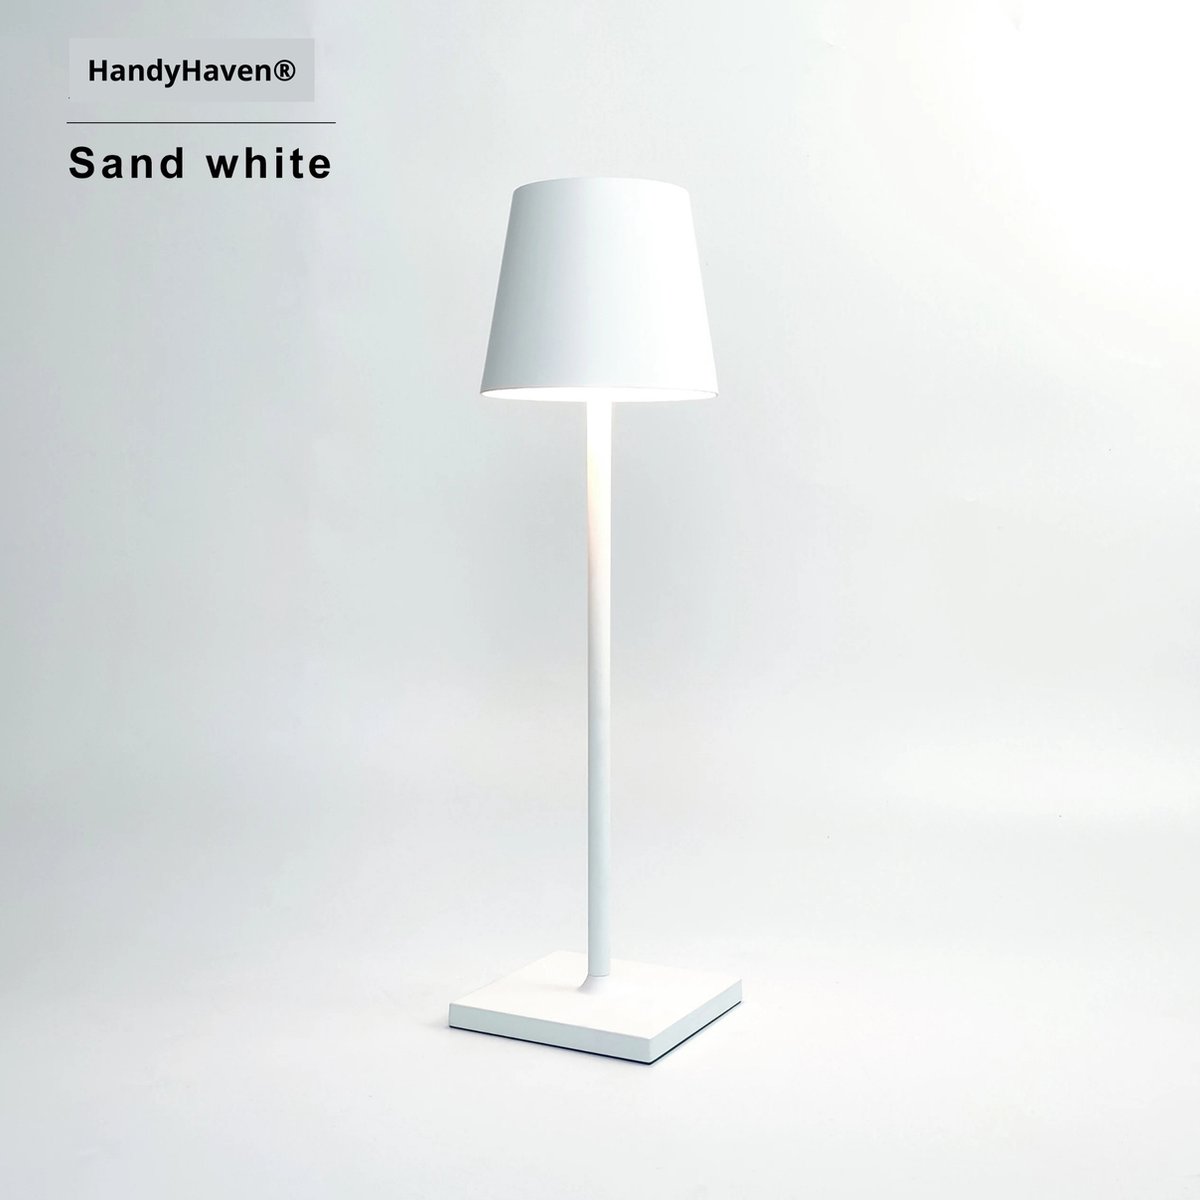 HandyHaven® - Tafellamp - Lamp - Buitenlamp - Nachtlamp - Bureaulamp - Wit - LED verlichting - Waterbestendig - USB opladen - Lampgrootte 38x11cm - Werktijd 15-20u